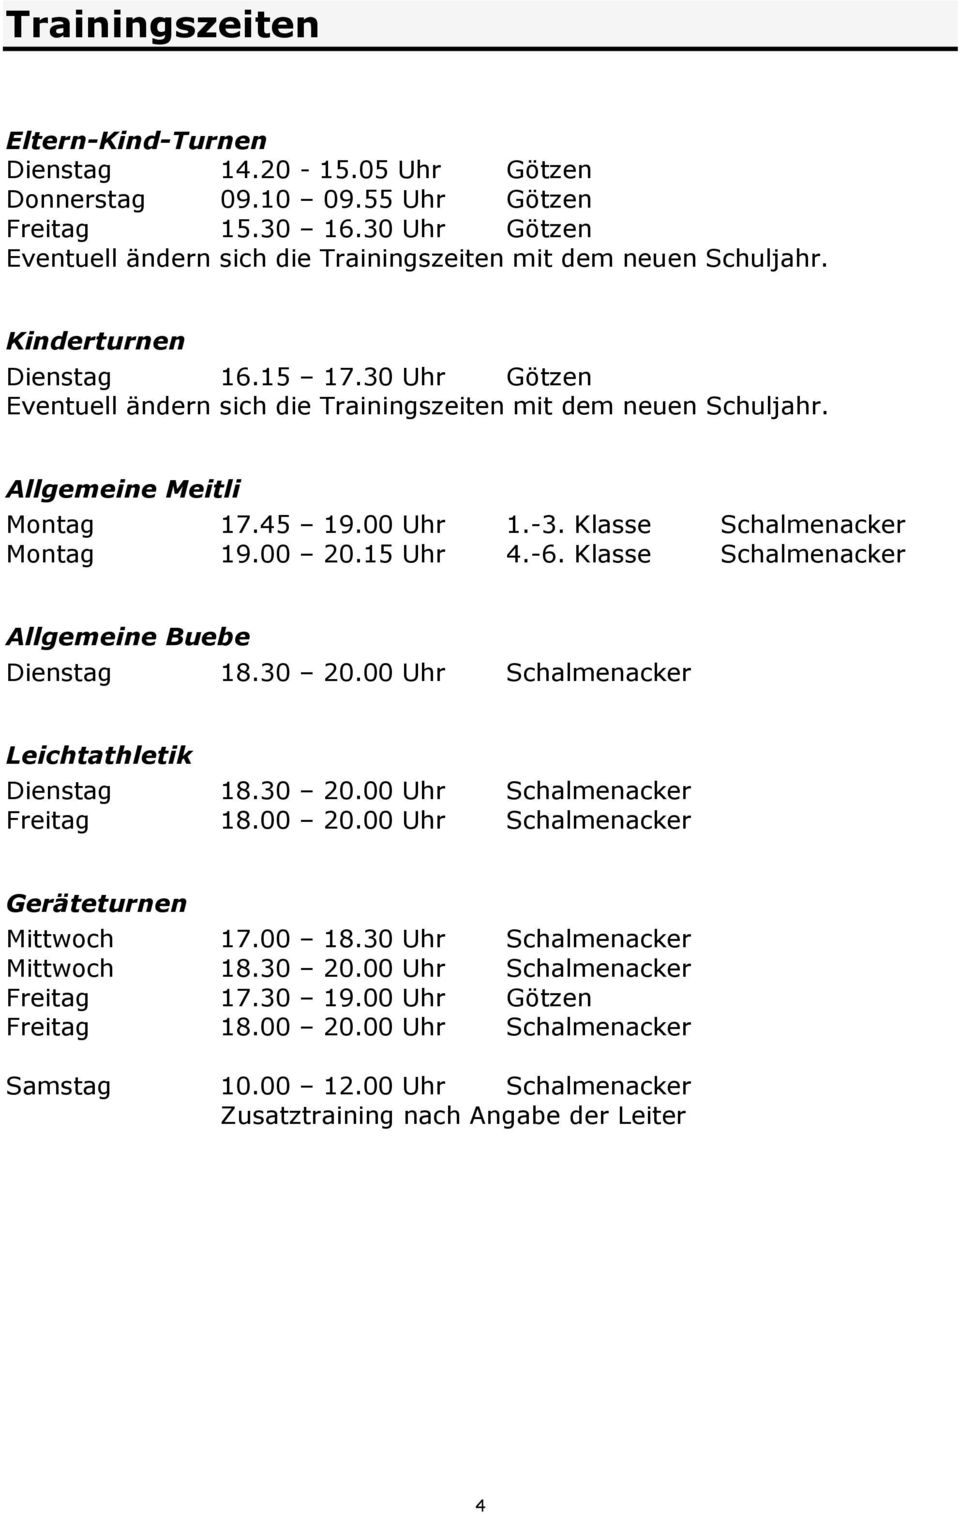 15 Uhr 4.-6. Klasse Schalmenacker Allgemeine Buebe Dienstag 18.30 20.00 Uhr Schalmenacker Leichtathletik Dienstag 18.30 20.00 Uhr Schalmenacker Freitag 18.00 20.